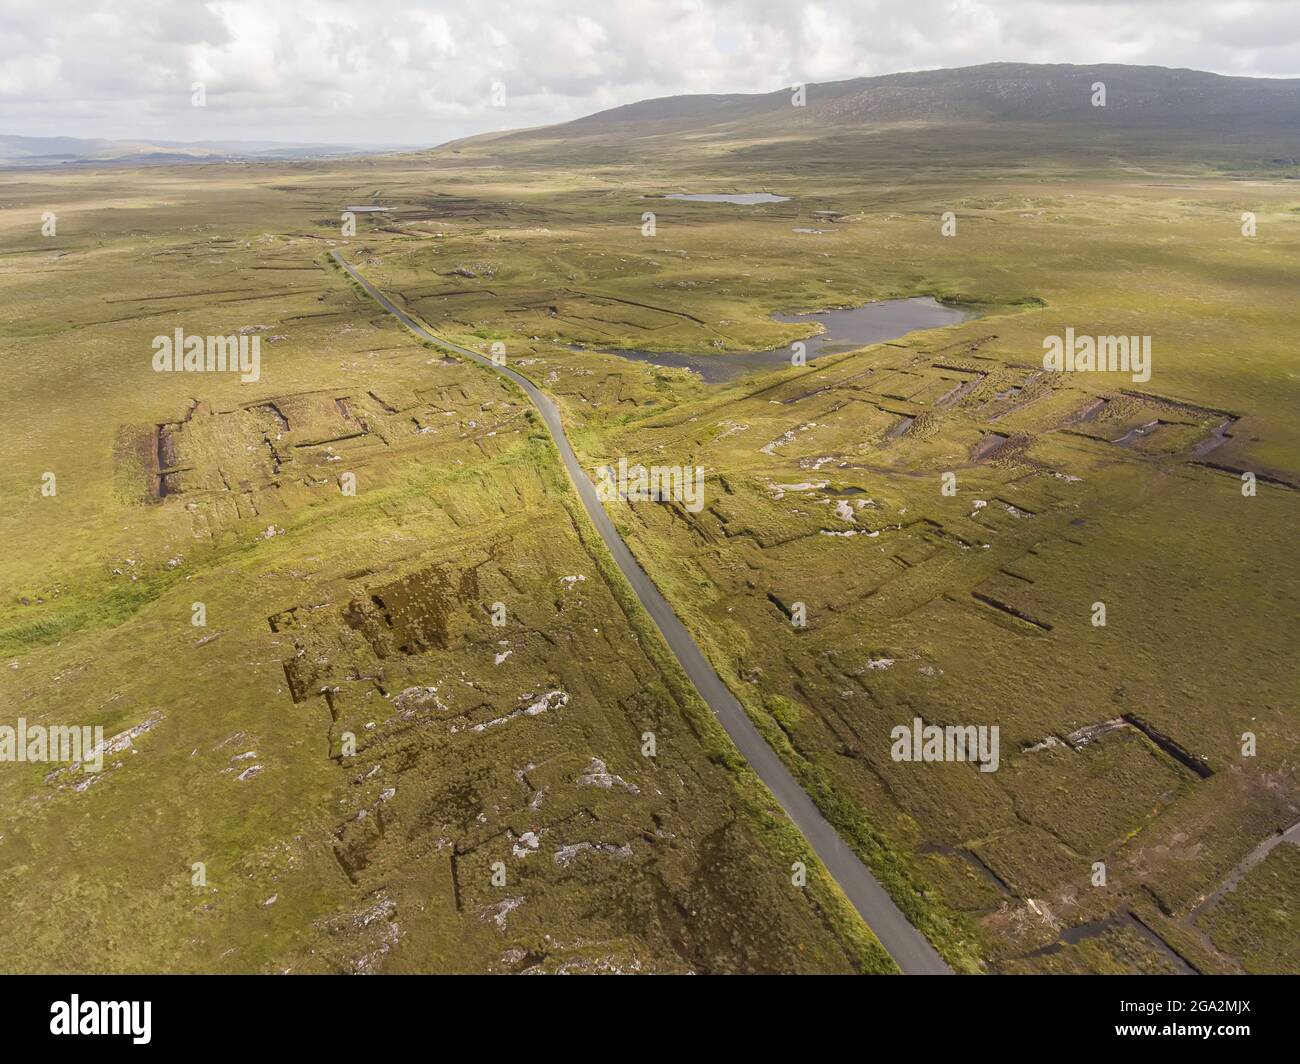 Vue aérienne de la route de la tourbière (Bothar na Scrathog) menant à travers des tourbières coupées dans le Connemara; Carraroe, comté de Galway, Irlande Banque D'Images